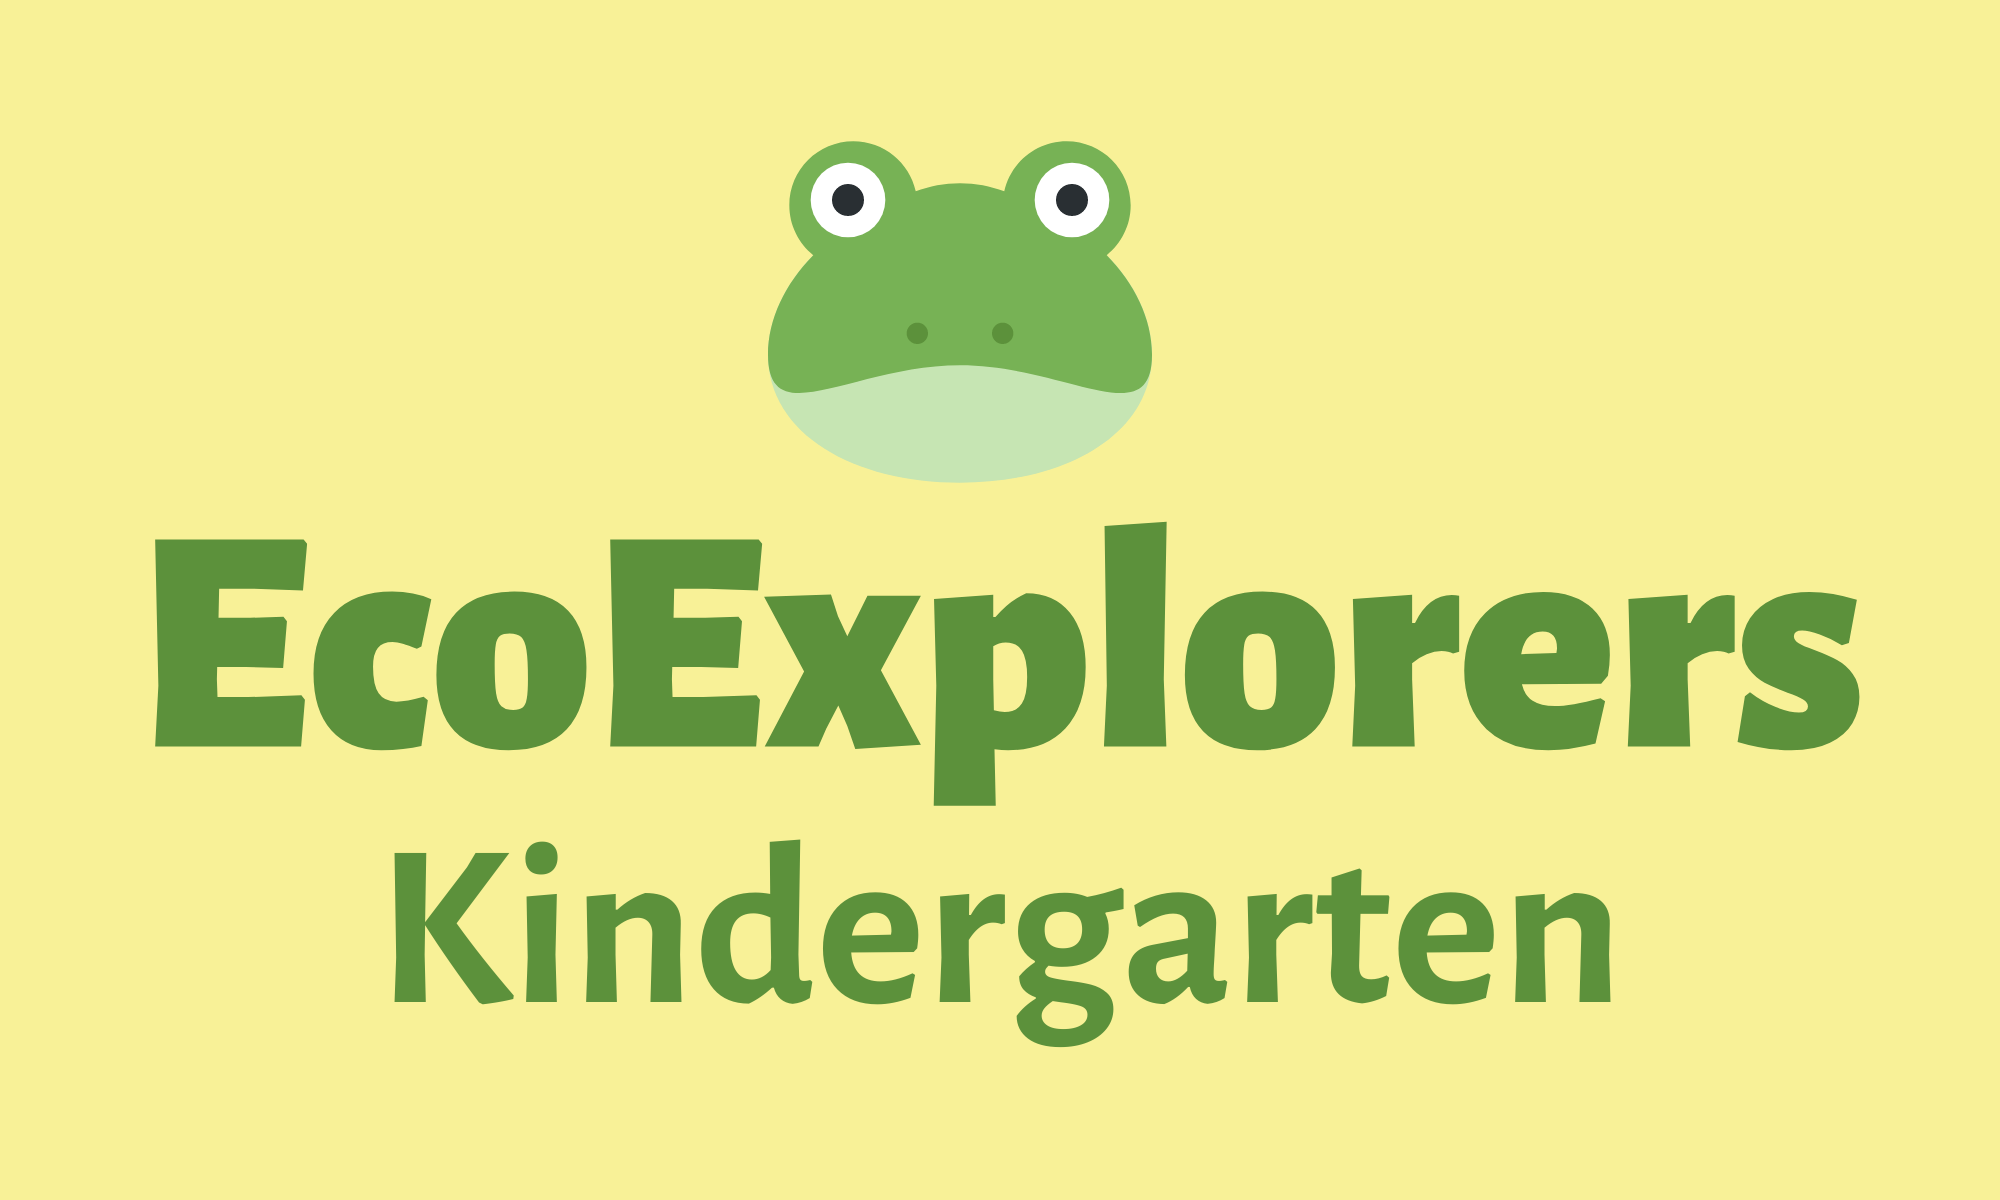 EcoExplorers Kindergarten